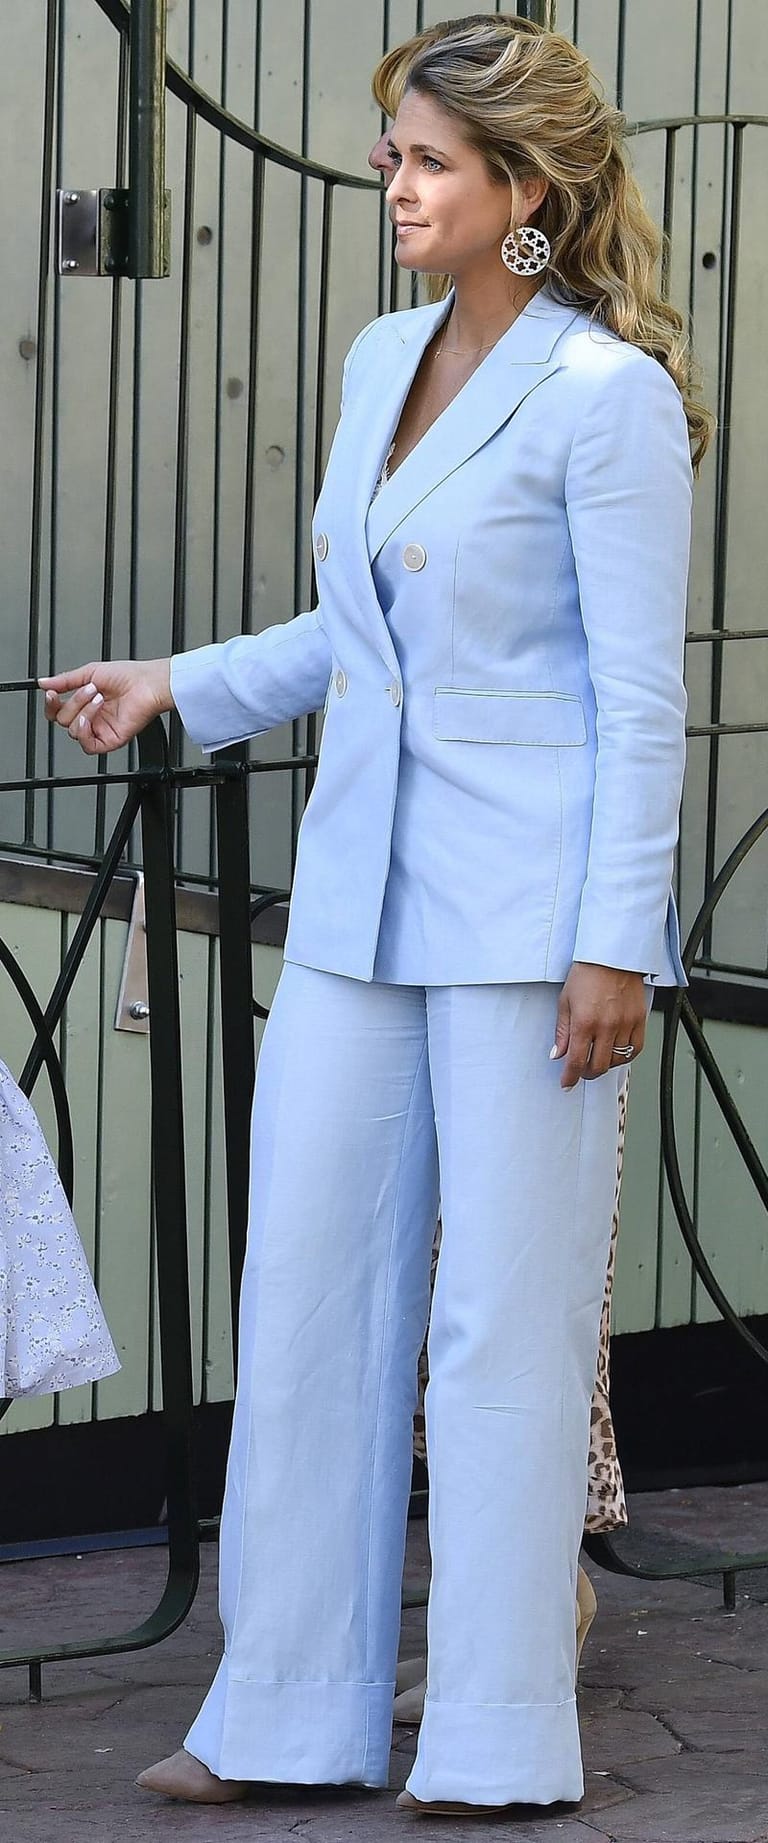 Prinzessin Madeleine im Mai 2018 im Vergnügungspark Gröna Lund